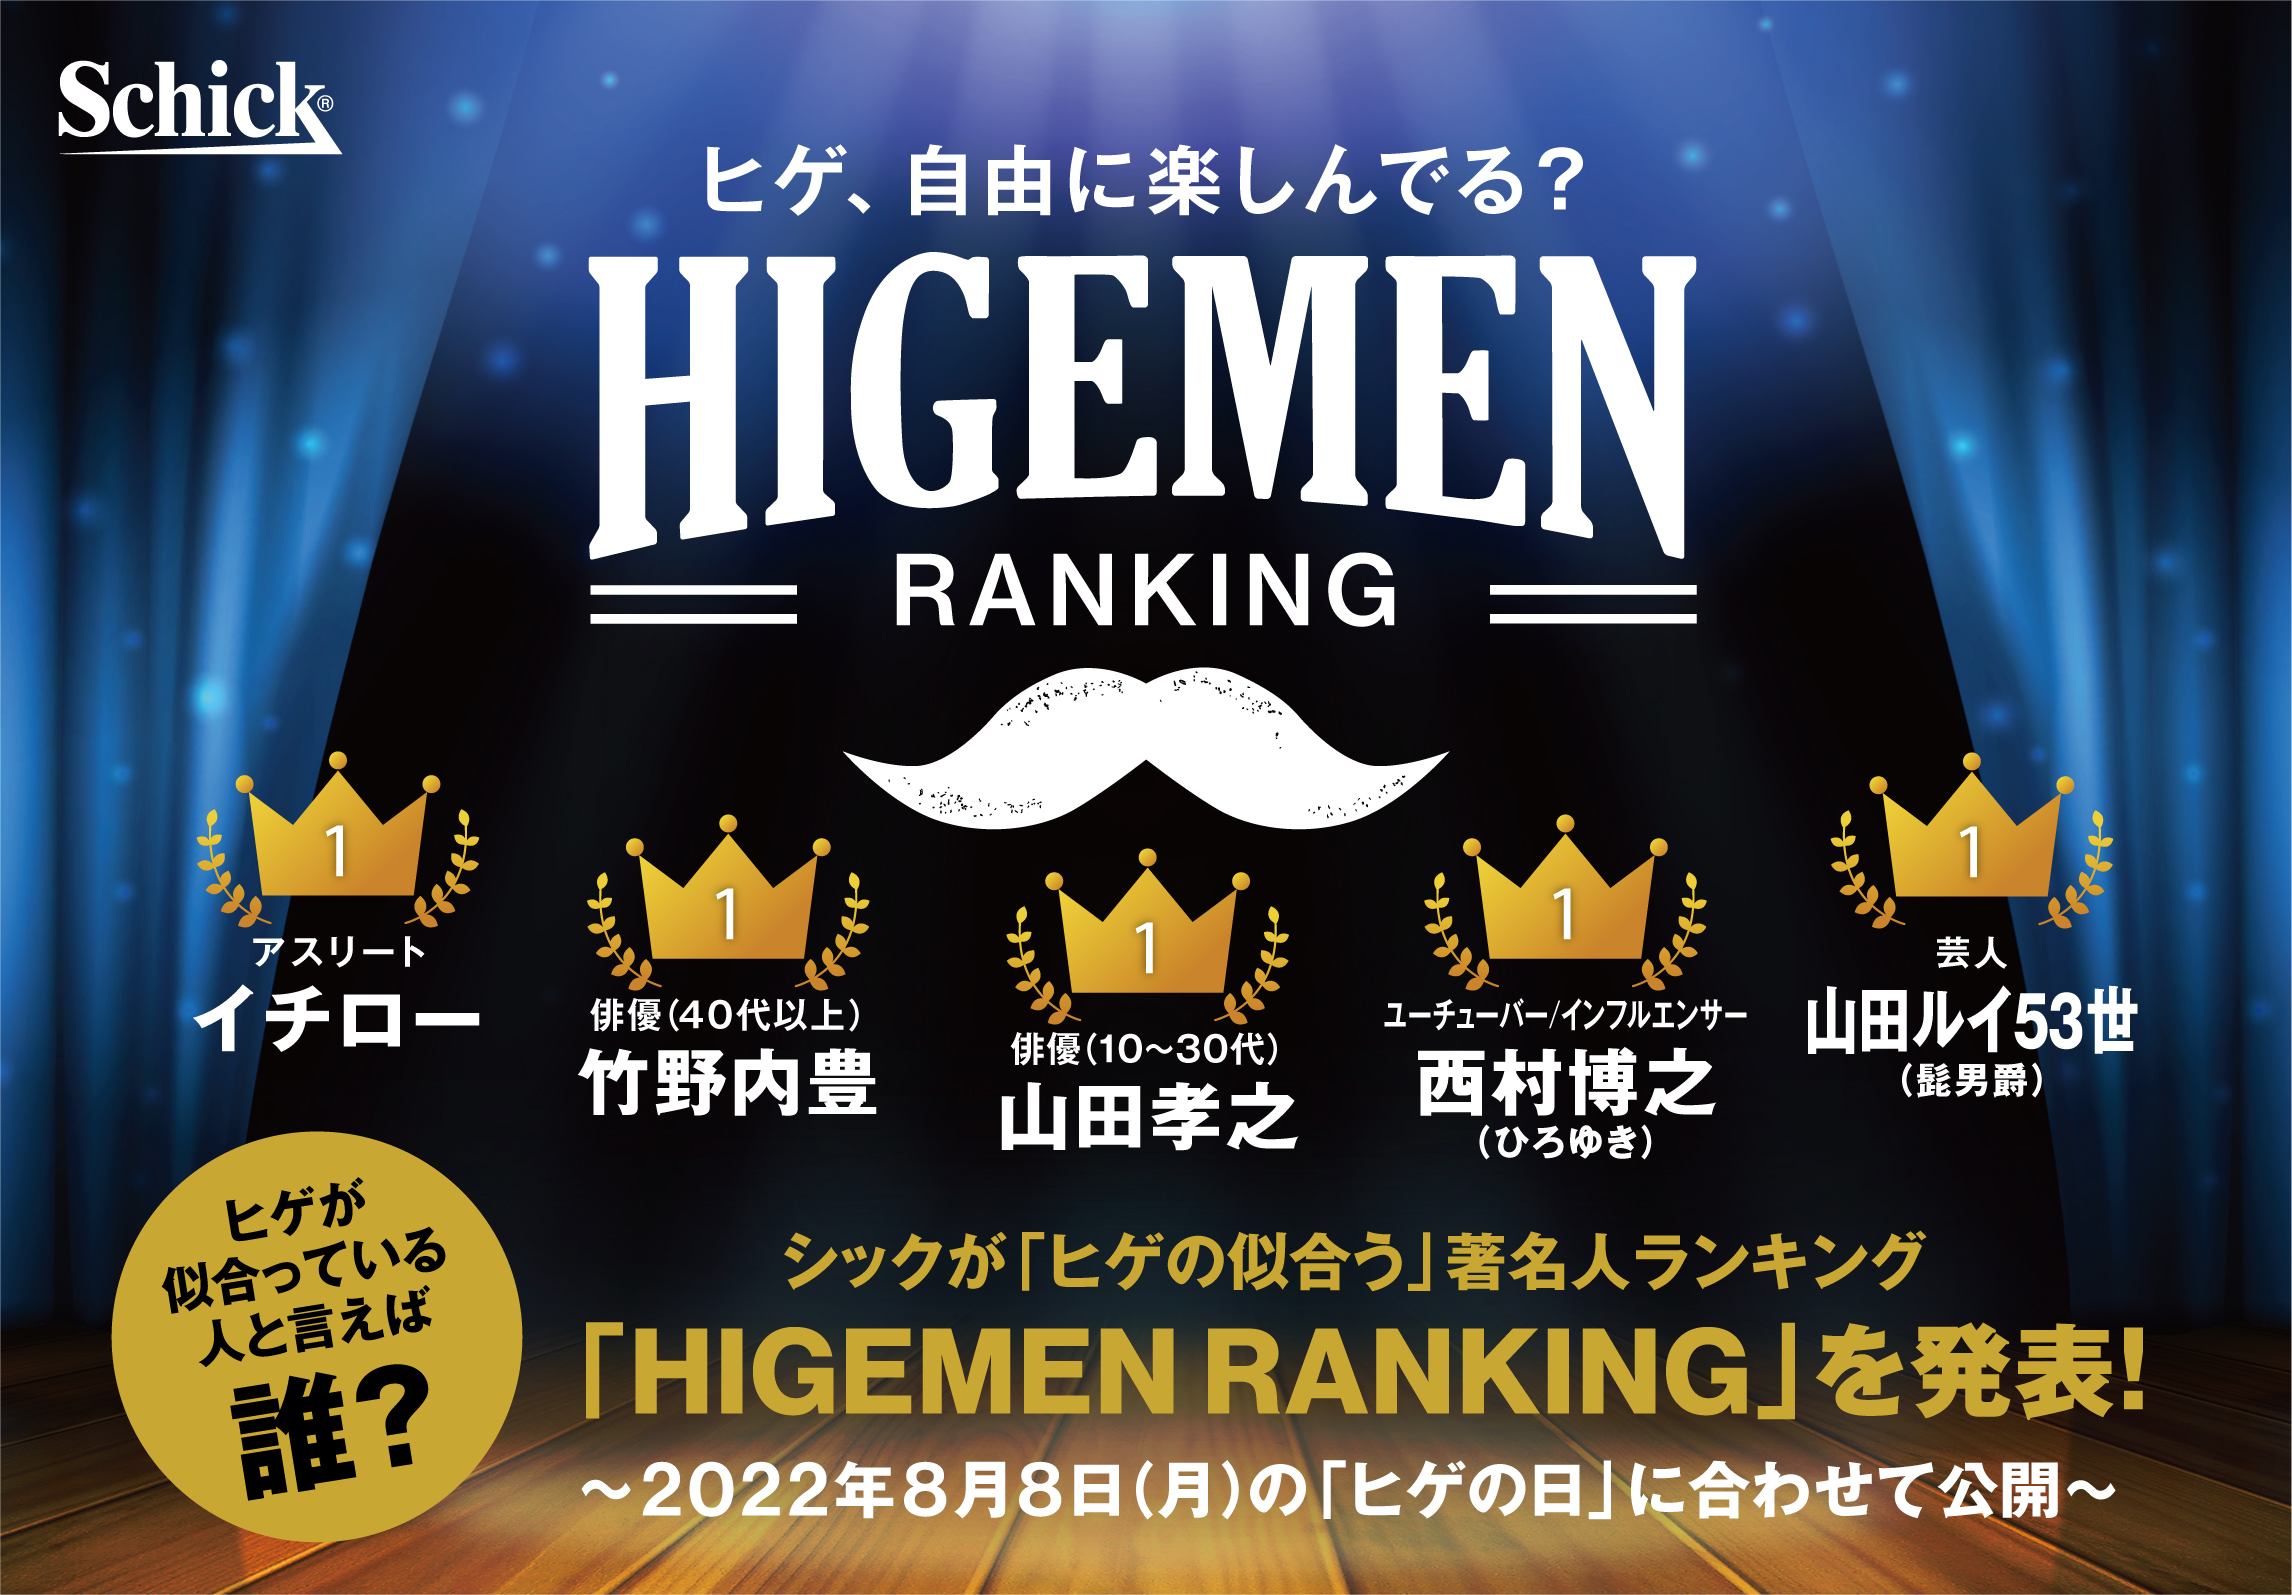 ヒゲが似合っている人と言えば 誰 シックが ヒゲの似合う 著名人ランキング Higemen Ranking を発表 シック ジャパン株式会社 Schick Japan K K のプレスリリース